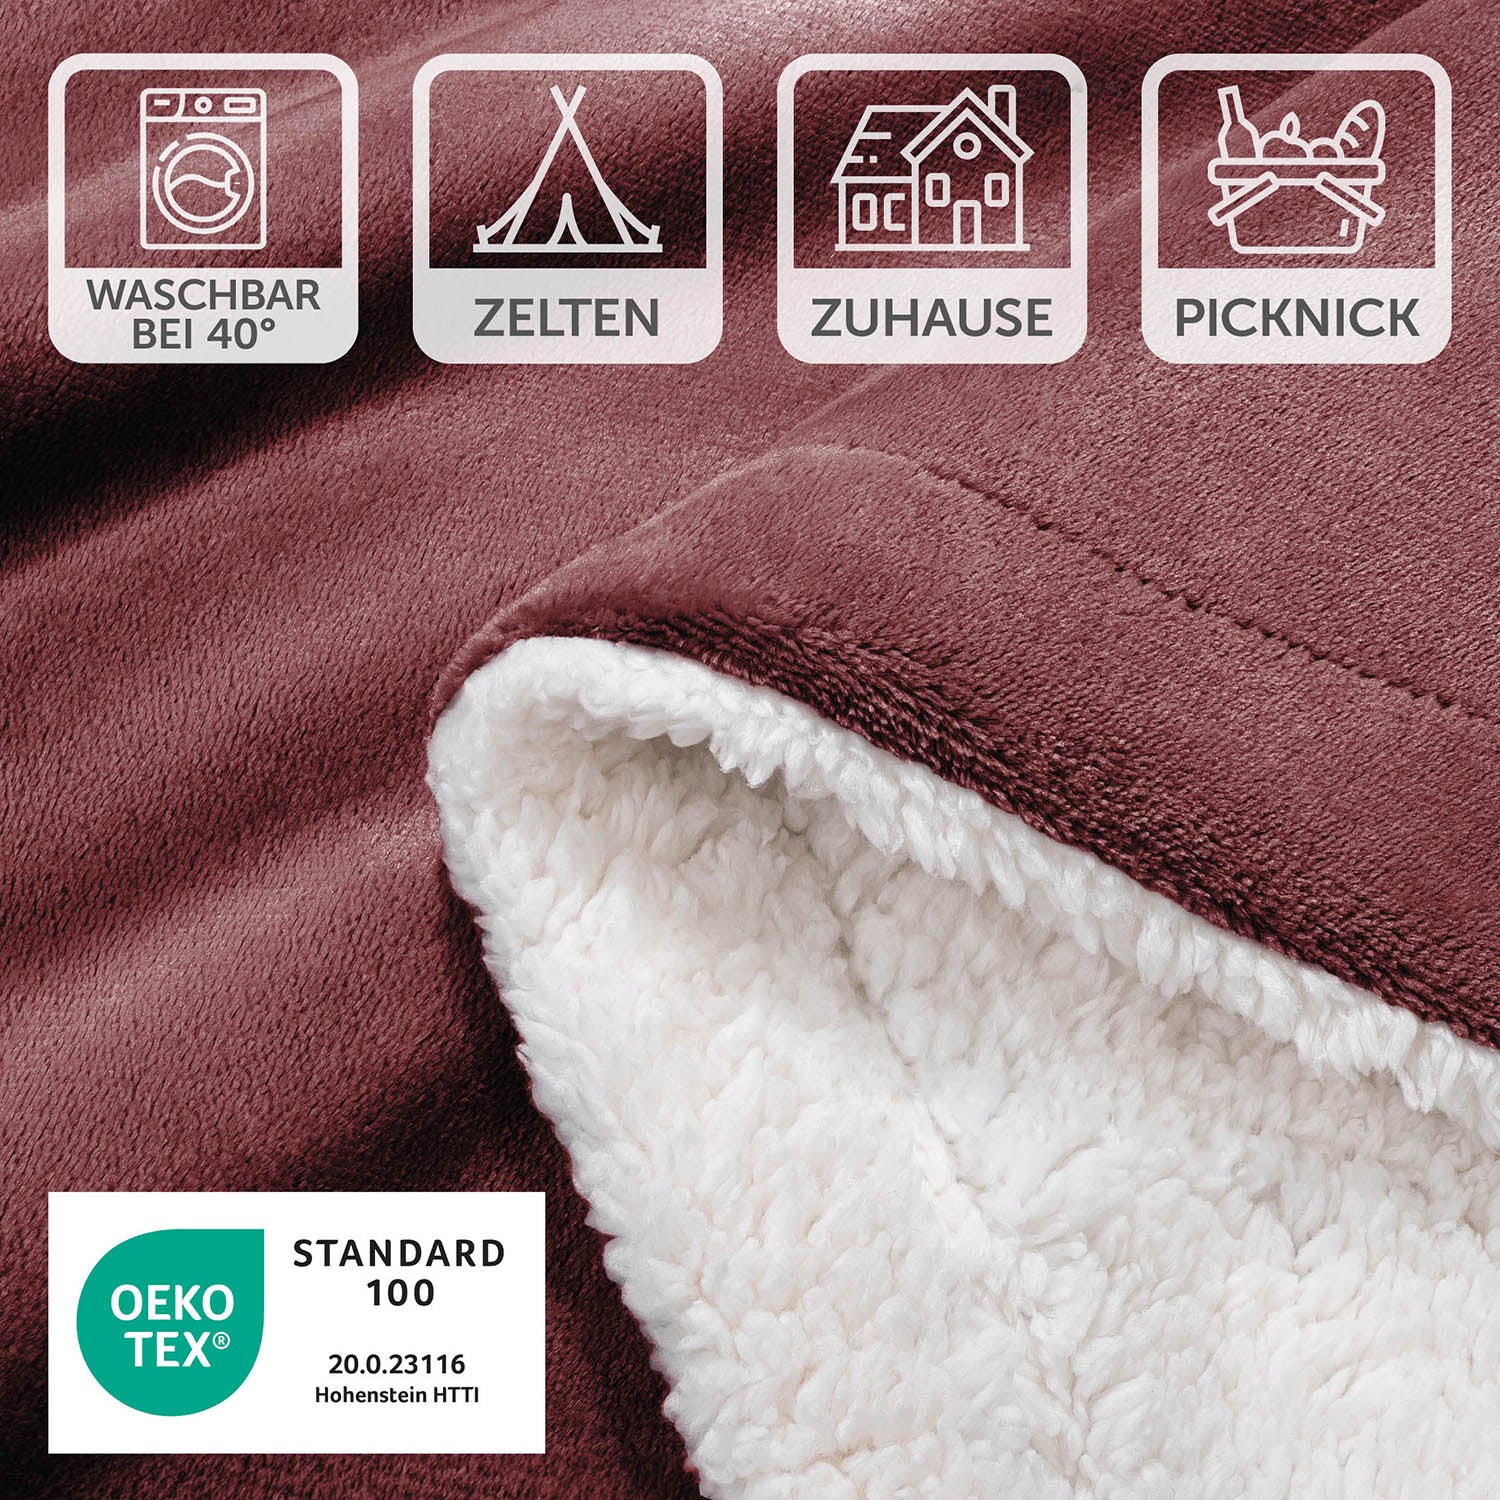 Detailansicht der rot-weinroten Decke mit Pflegesymbolen und OEKO-TEX Standard 100 Siegel, waschbar bei 40 Grad, geeignet für Zelten, Zuhause und Picknick.